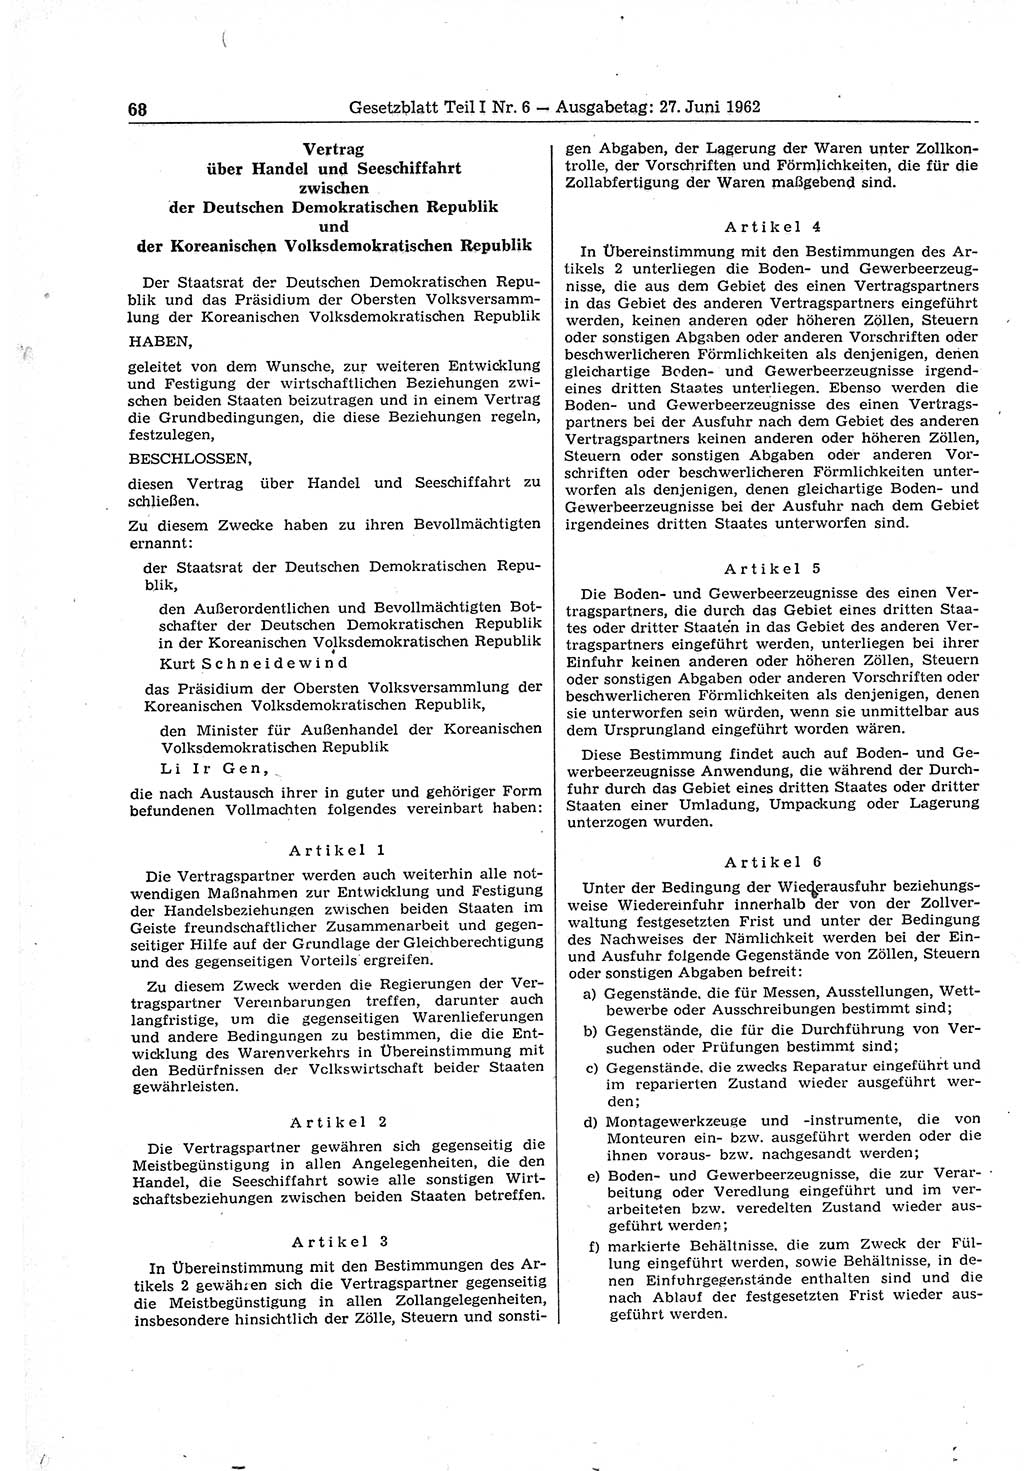 Gesetzblatt (GBl.) der Deutschen Demokratischen Republik (DDR) Teil Ⅰ 1962, Seite 68 (GBl. DDR Ⅰ 1962, S. 68)